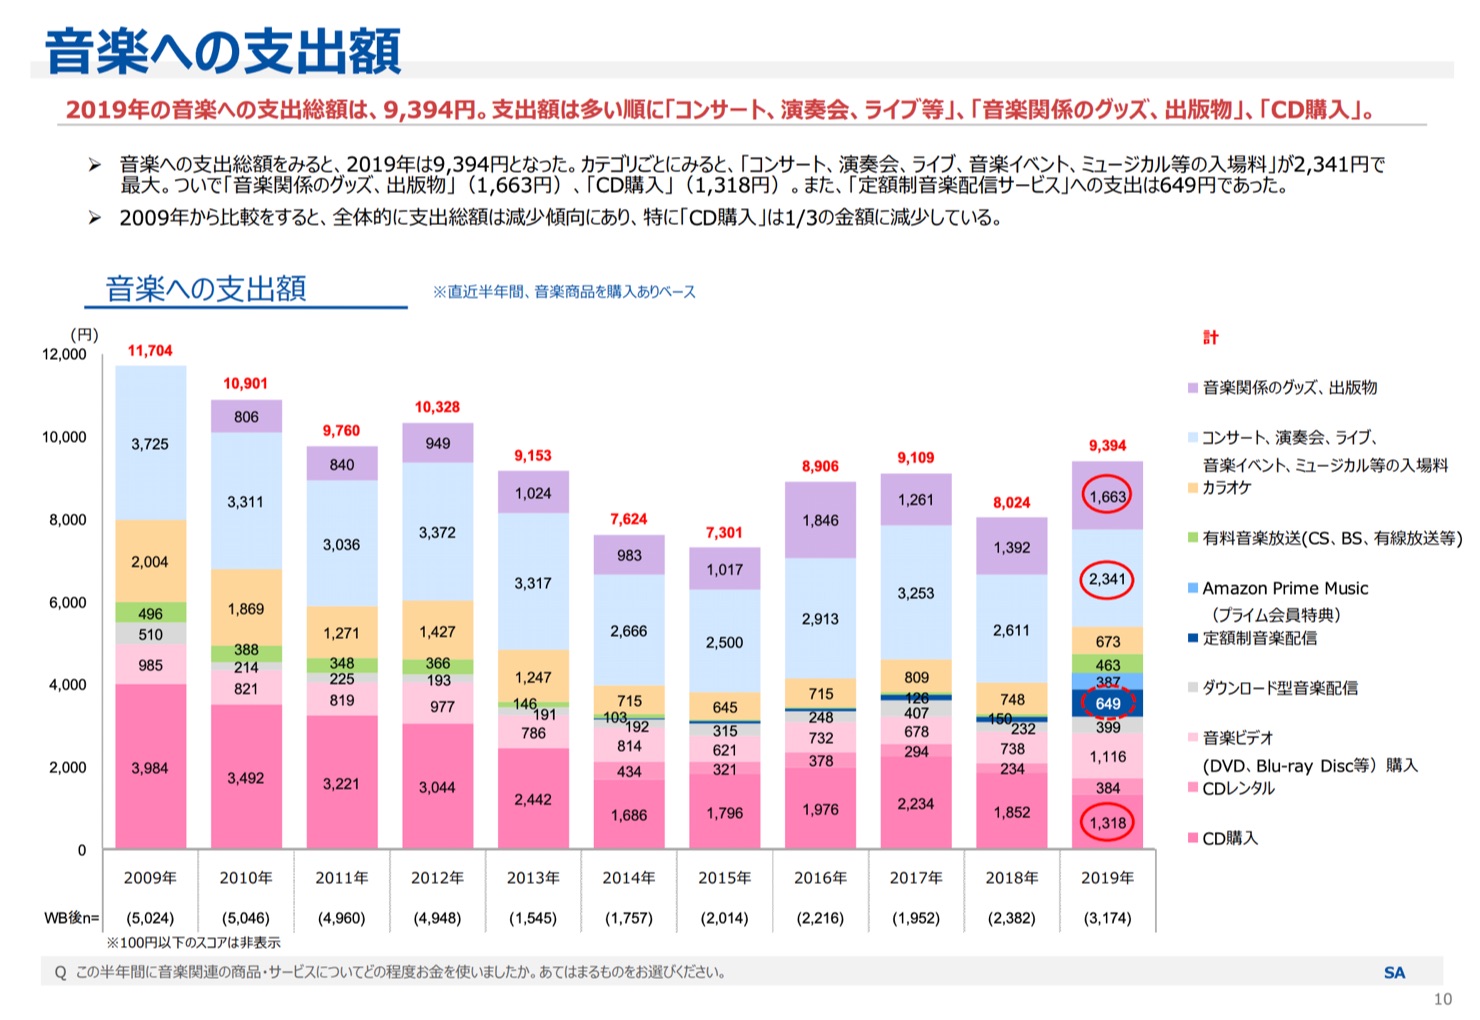 Japanese spending on music